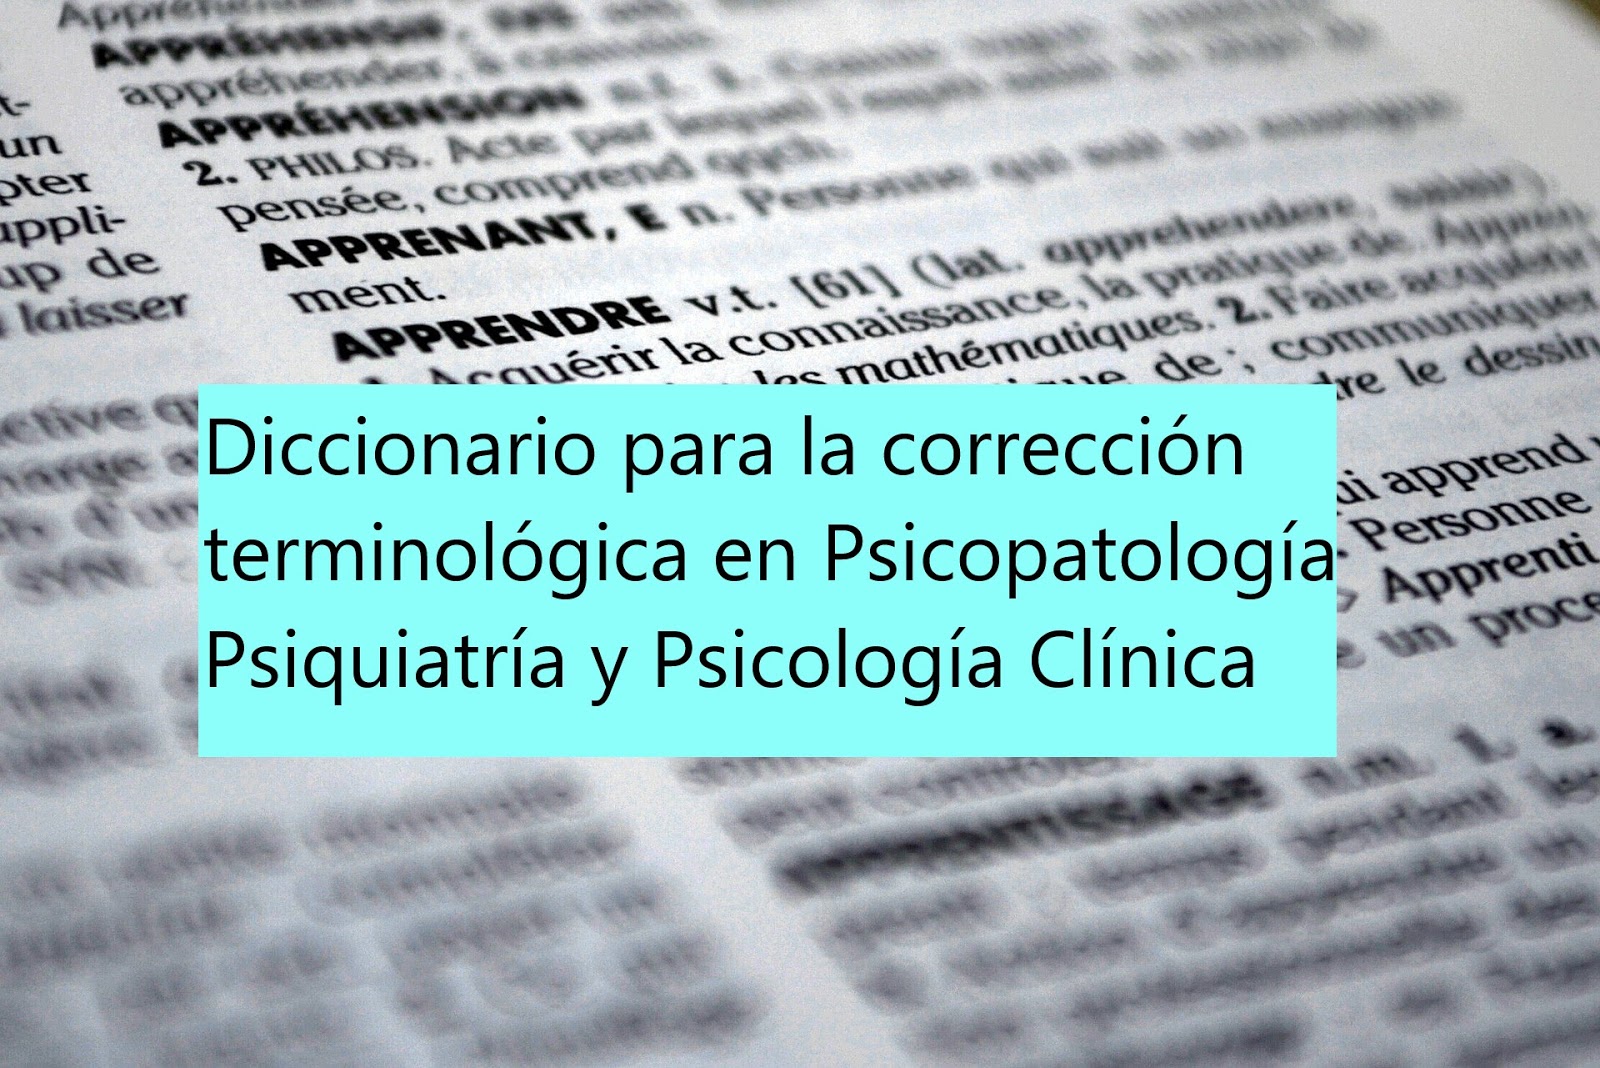 Diccionario para la corrección terminológica en Psicopatología, Psiquiatría y Psicología Clínica